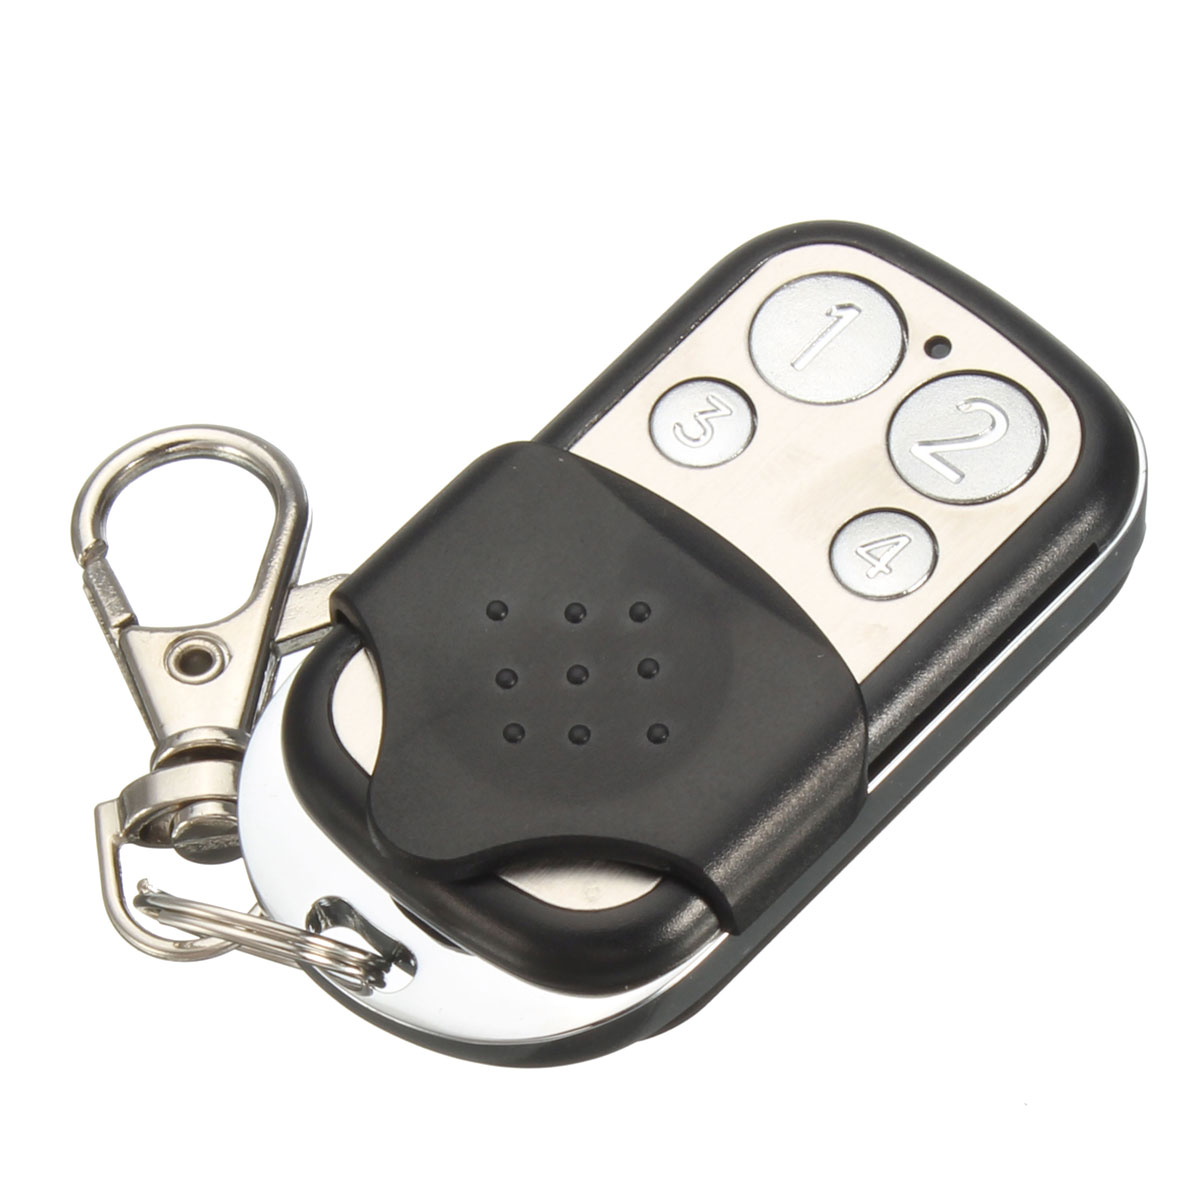 4-Button-433MHz-Garage-Gate-Key-Remote-Control-For-Marantec-D302D304D313-Comfort-220-1060990-6